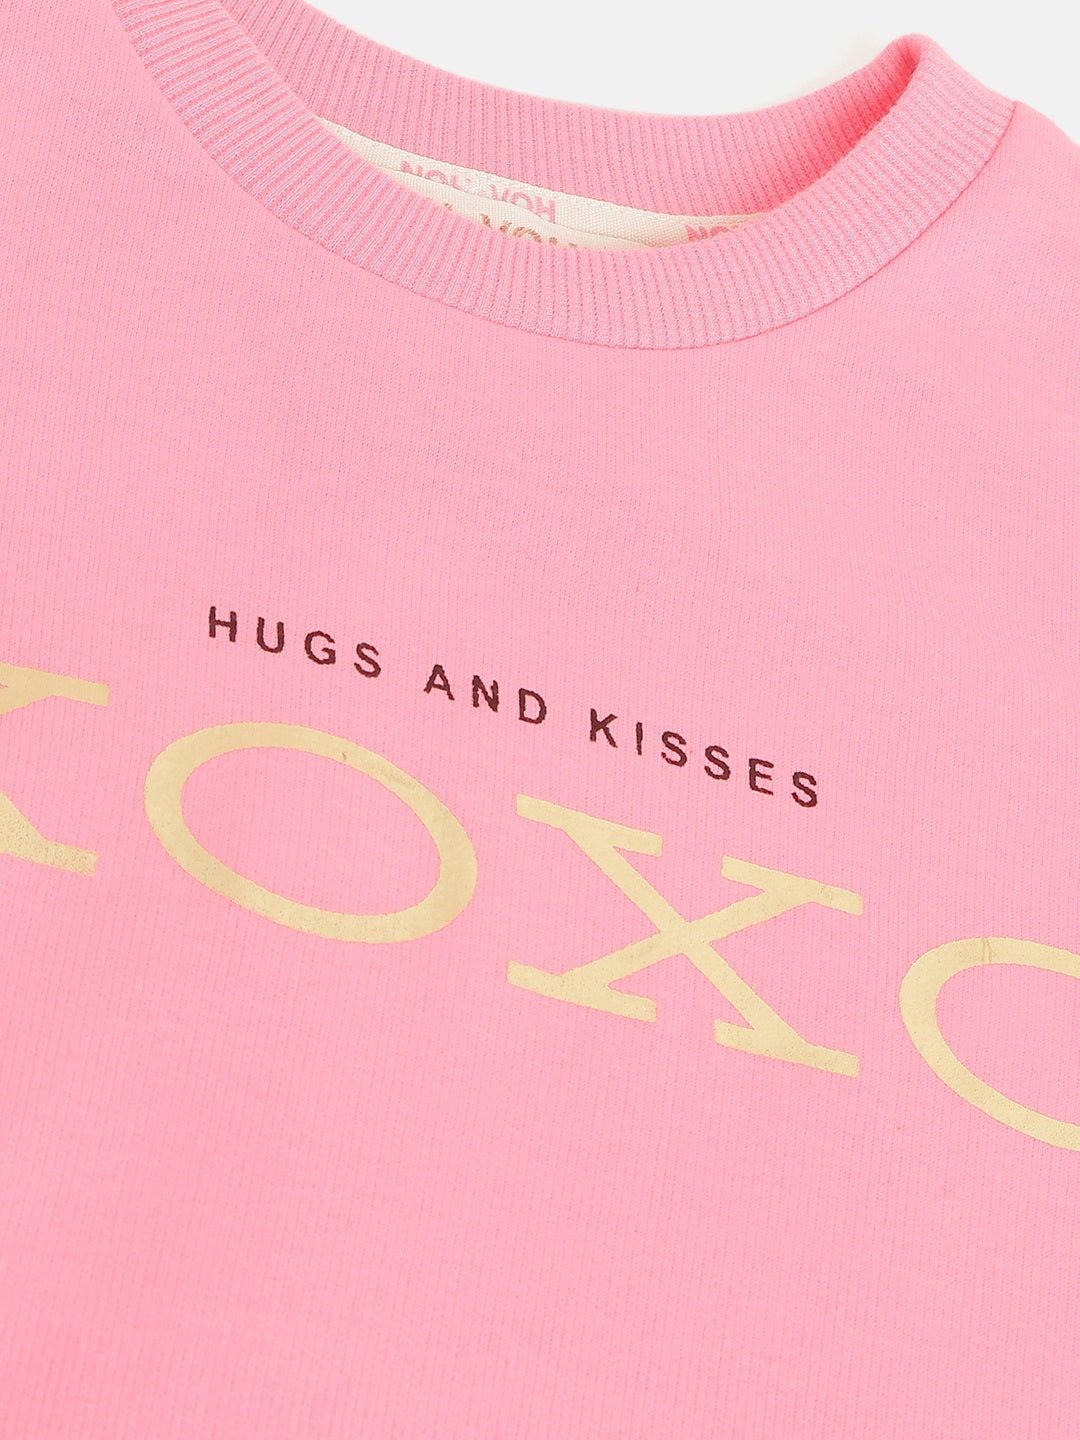 Girls Pink Fleece XOXO Kangaroo Pocket Dress